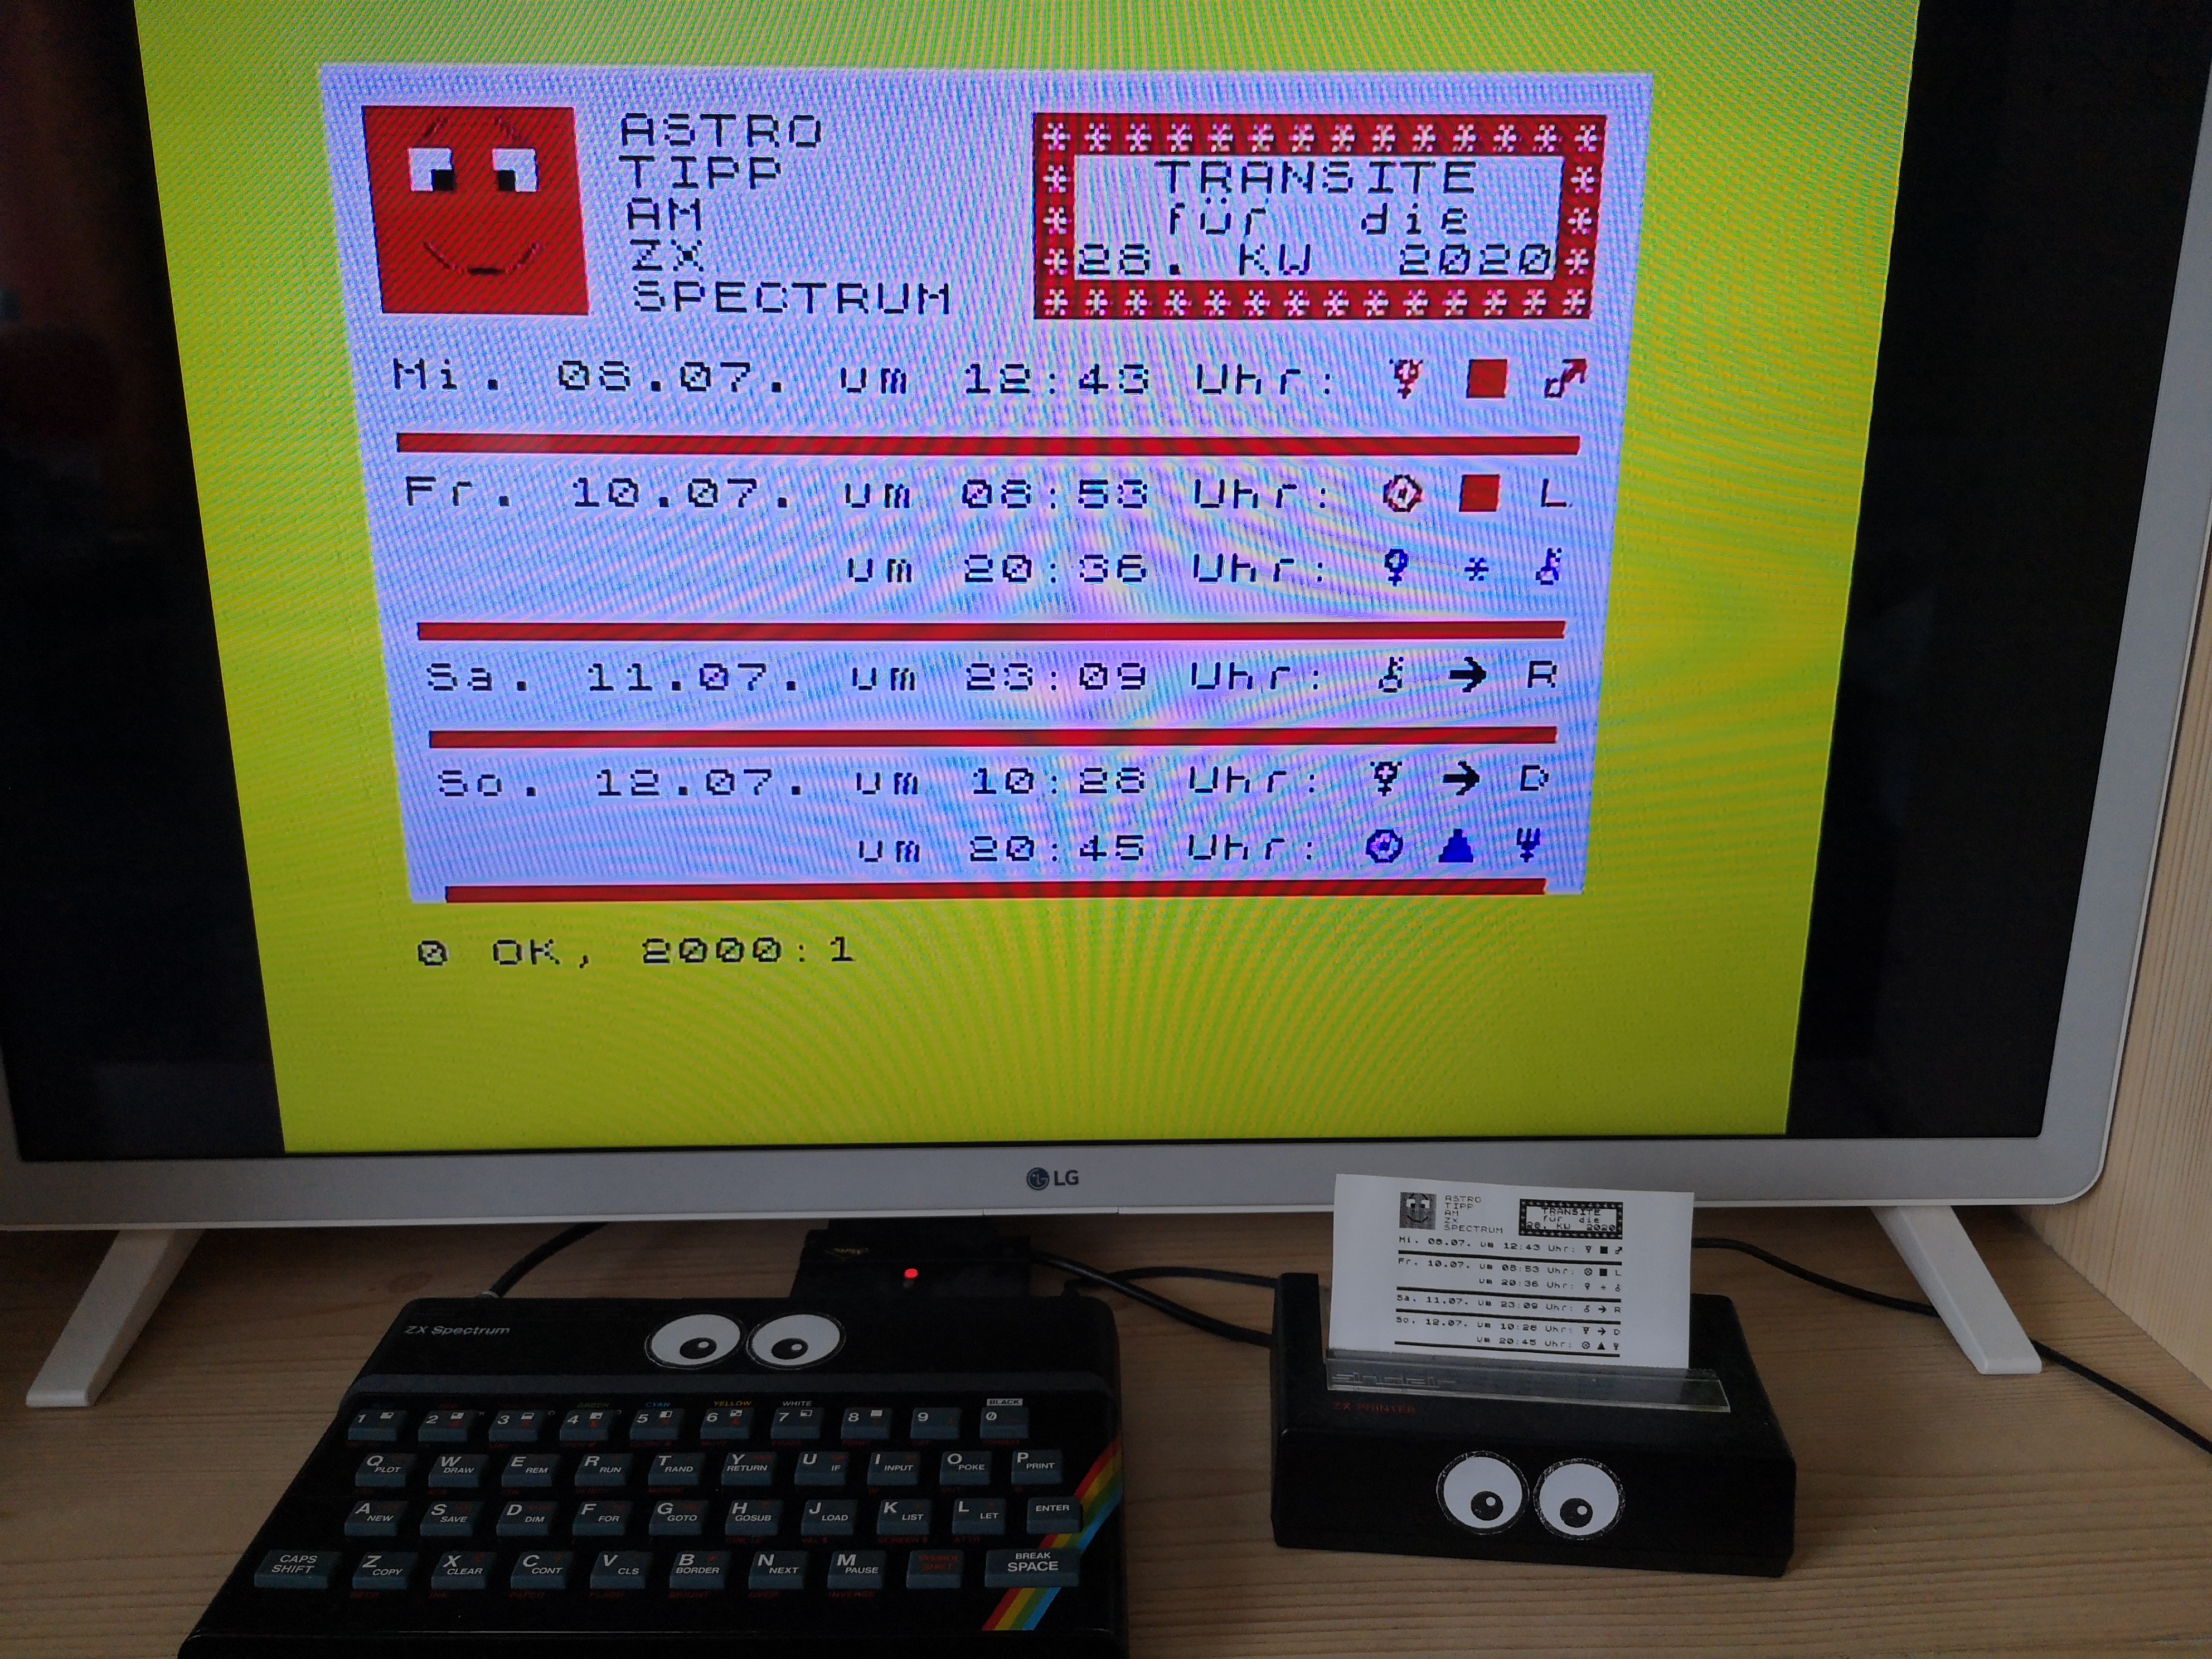 Astro-Tipps dieser Kalenderwoche am ZX Spectrum und ZX Printer